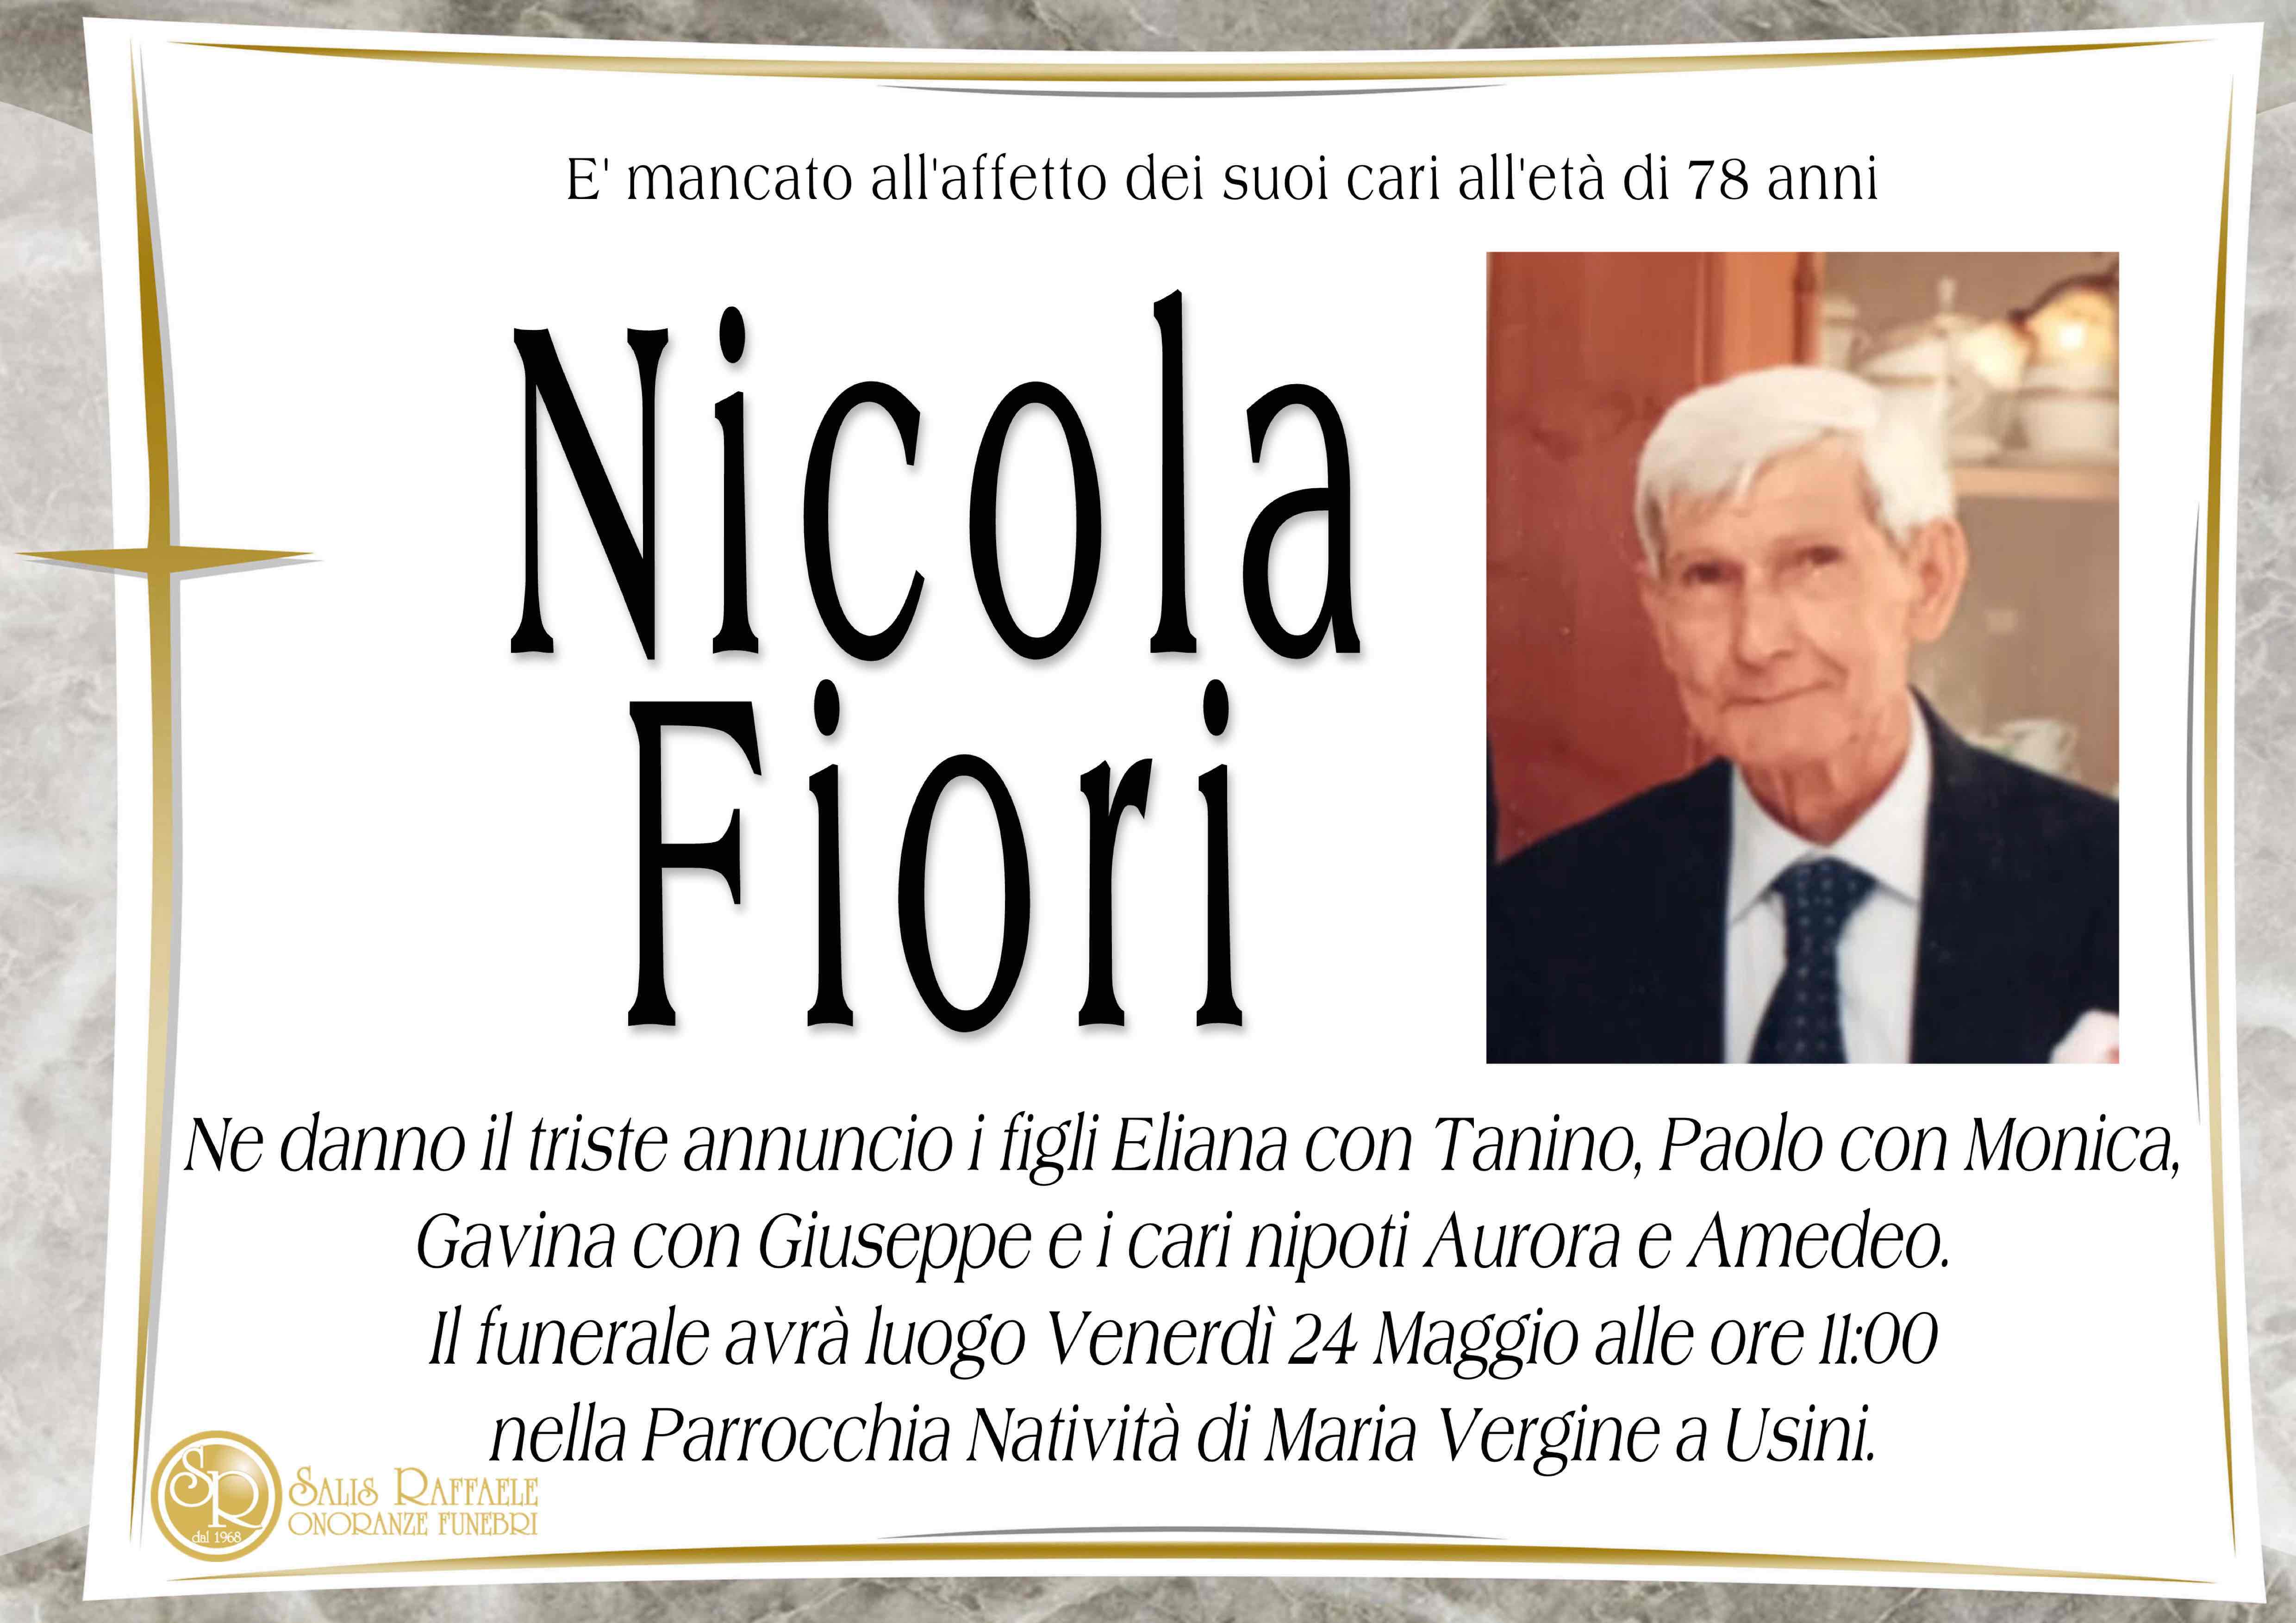 Nicola Fiori